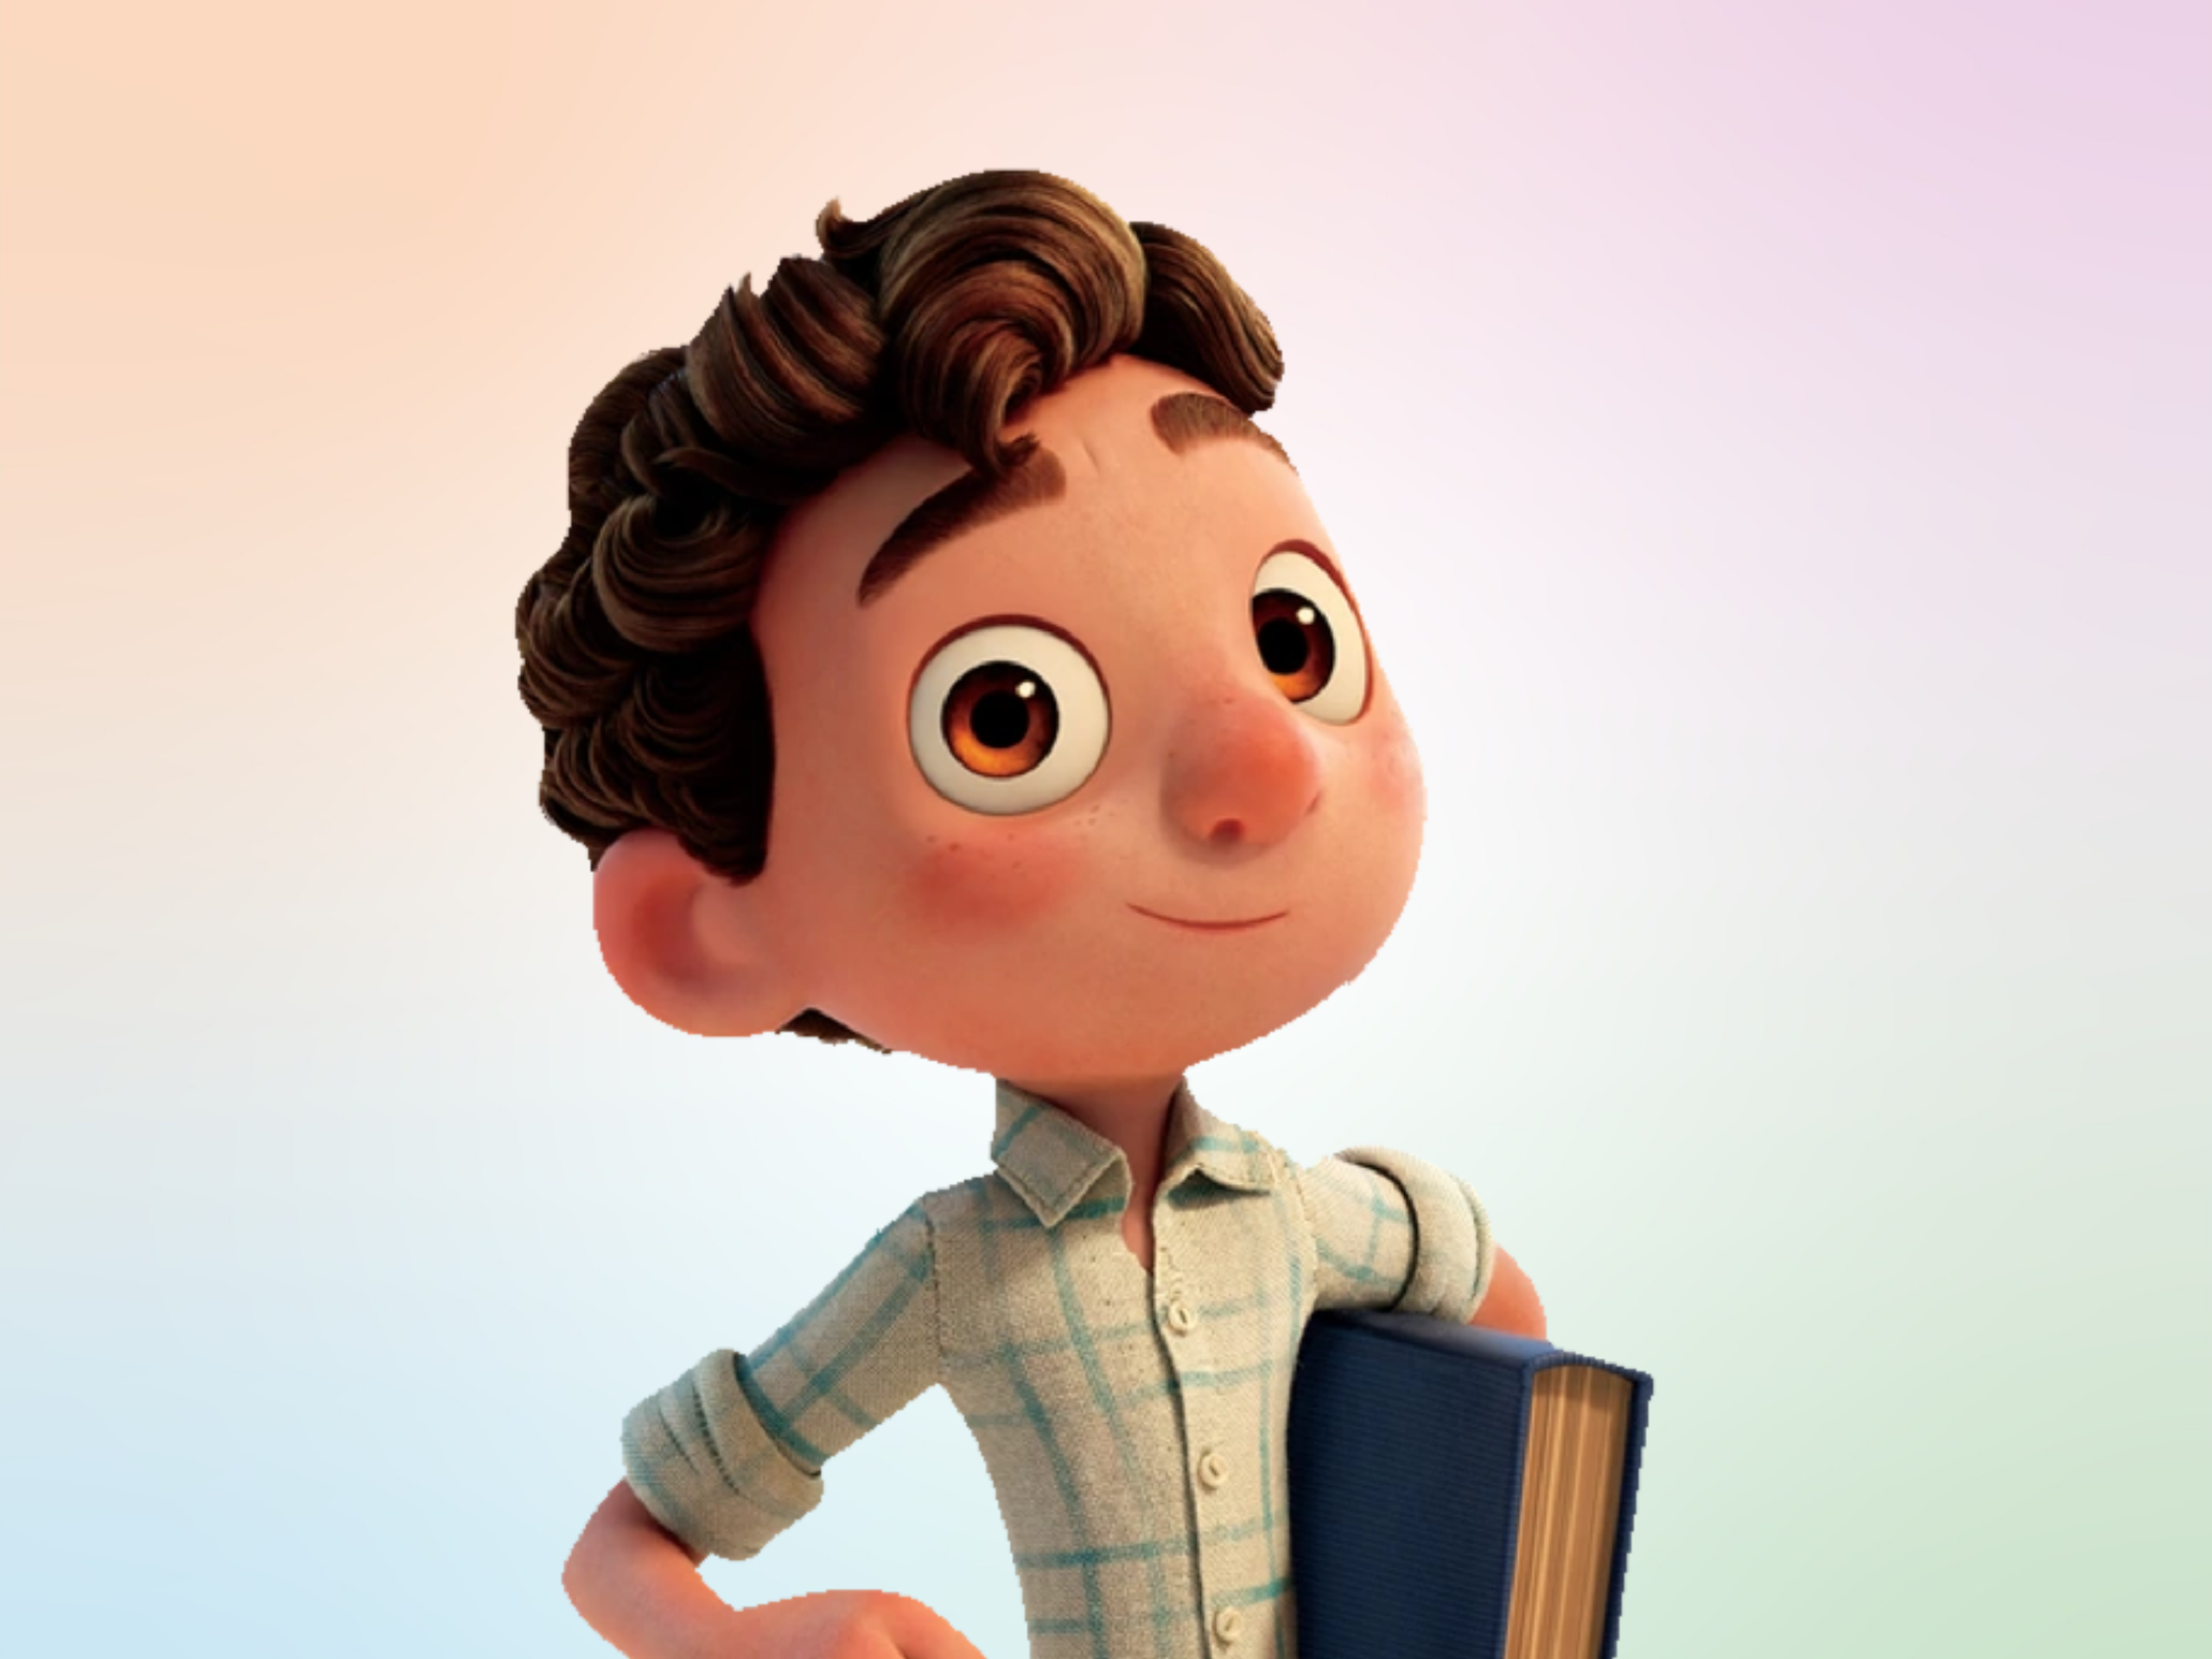 Luca Paguro icon  Disney pop, Pixar films, Lucas movie